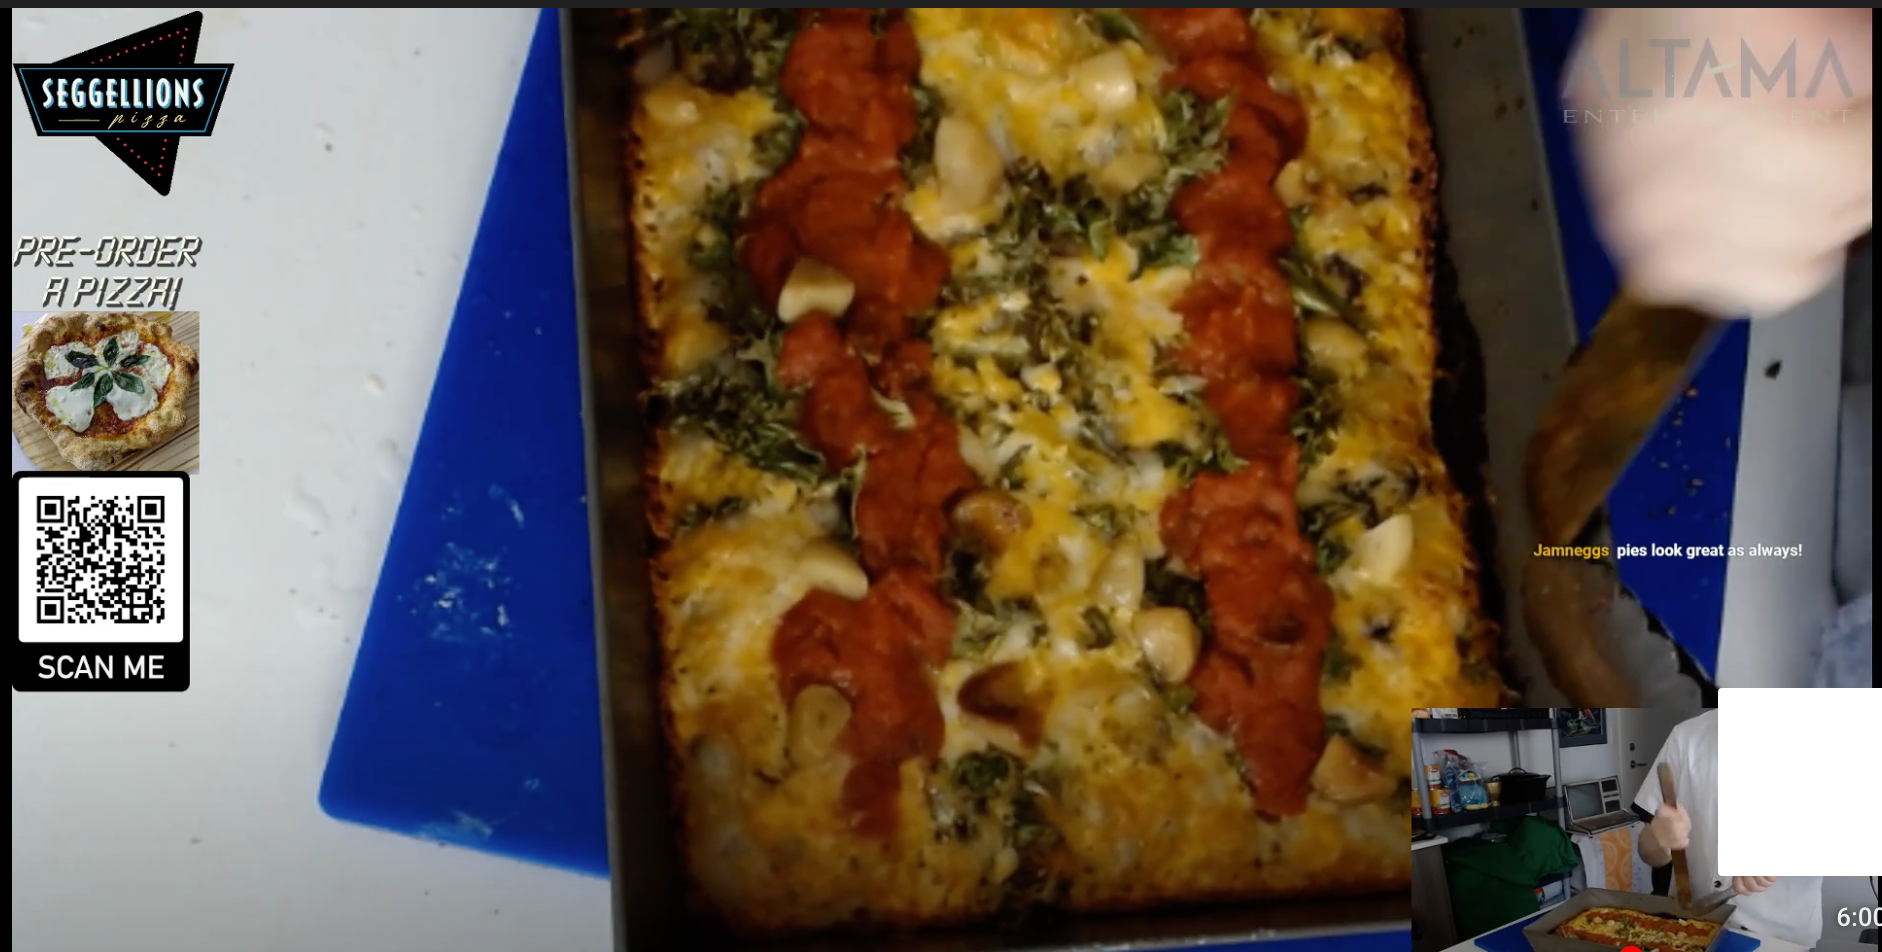 Load video: Seggellion&#39;s Pizza